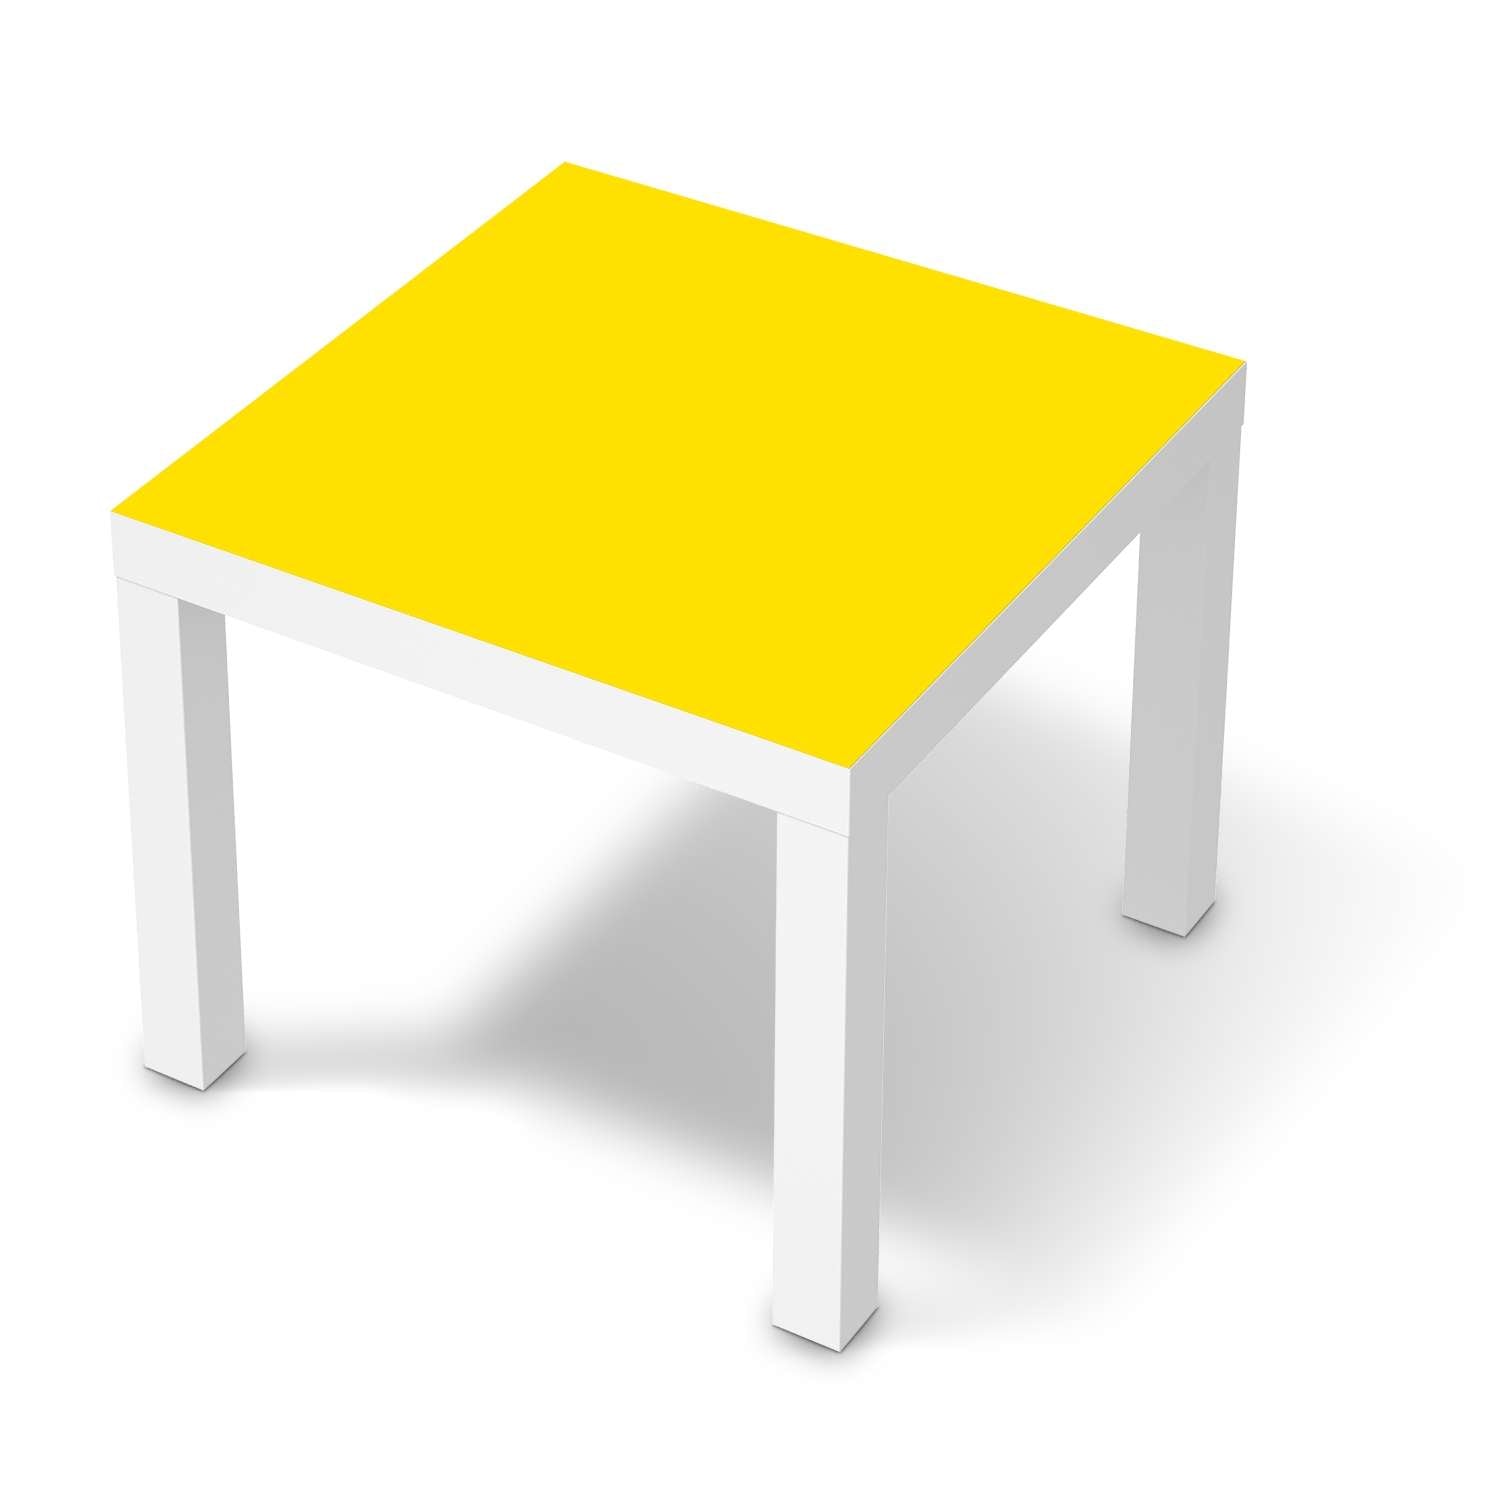 M?belfolie IKEA Lack Tisch 55x55 cm - Design: Gelb Dark von creatisto